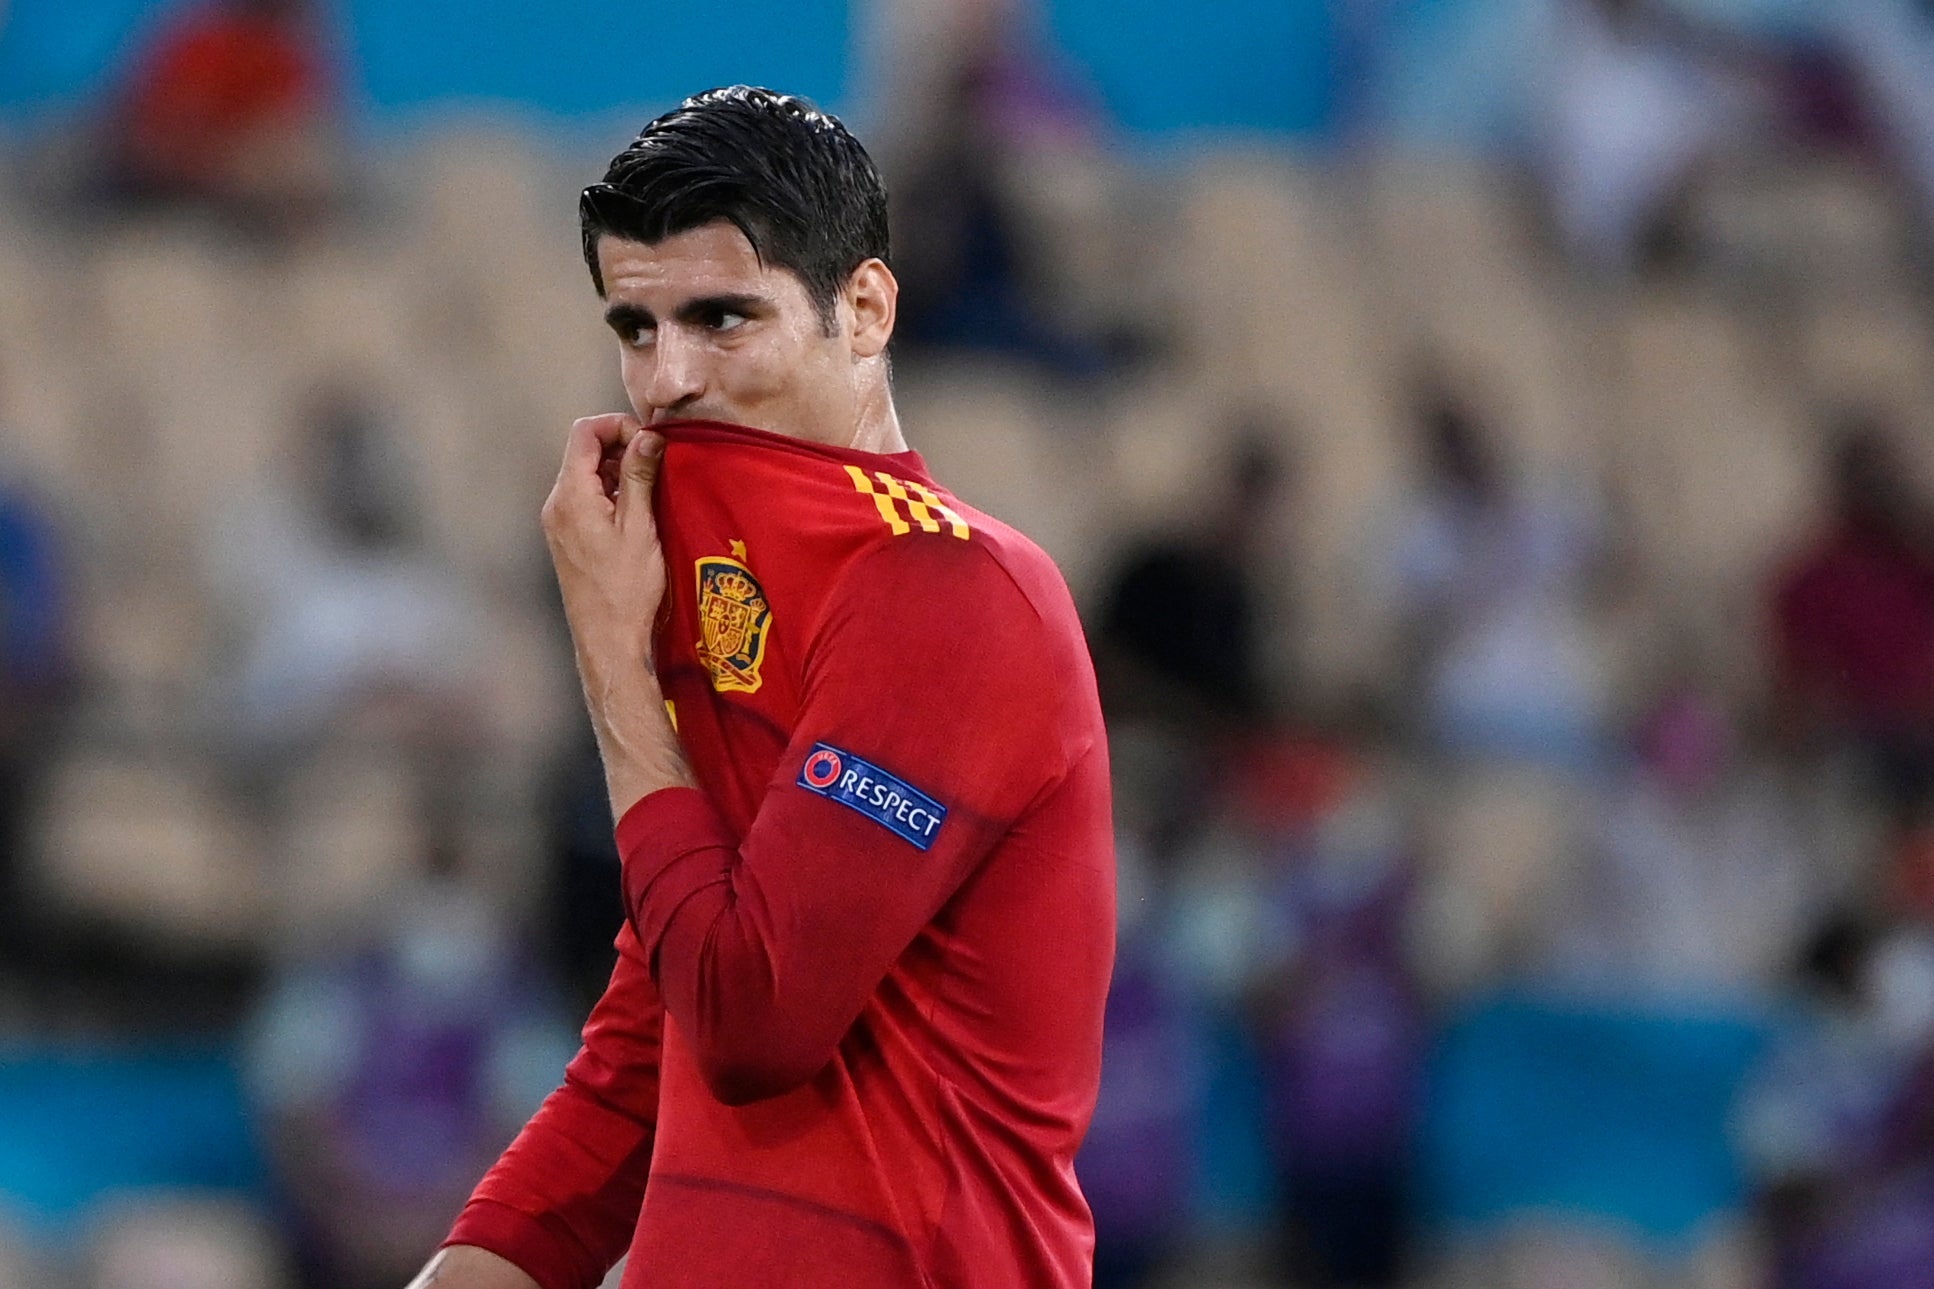 Spain’s Alvaro Morata missed good chances in each half